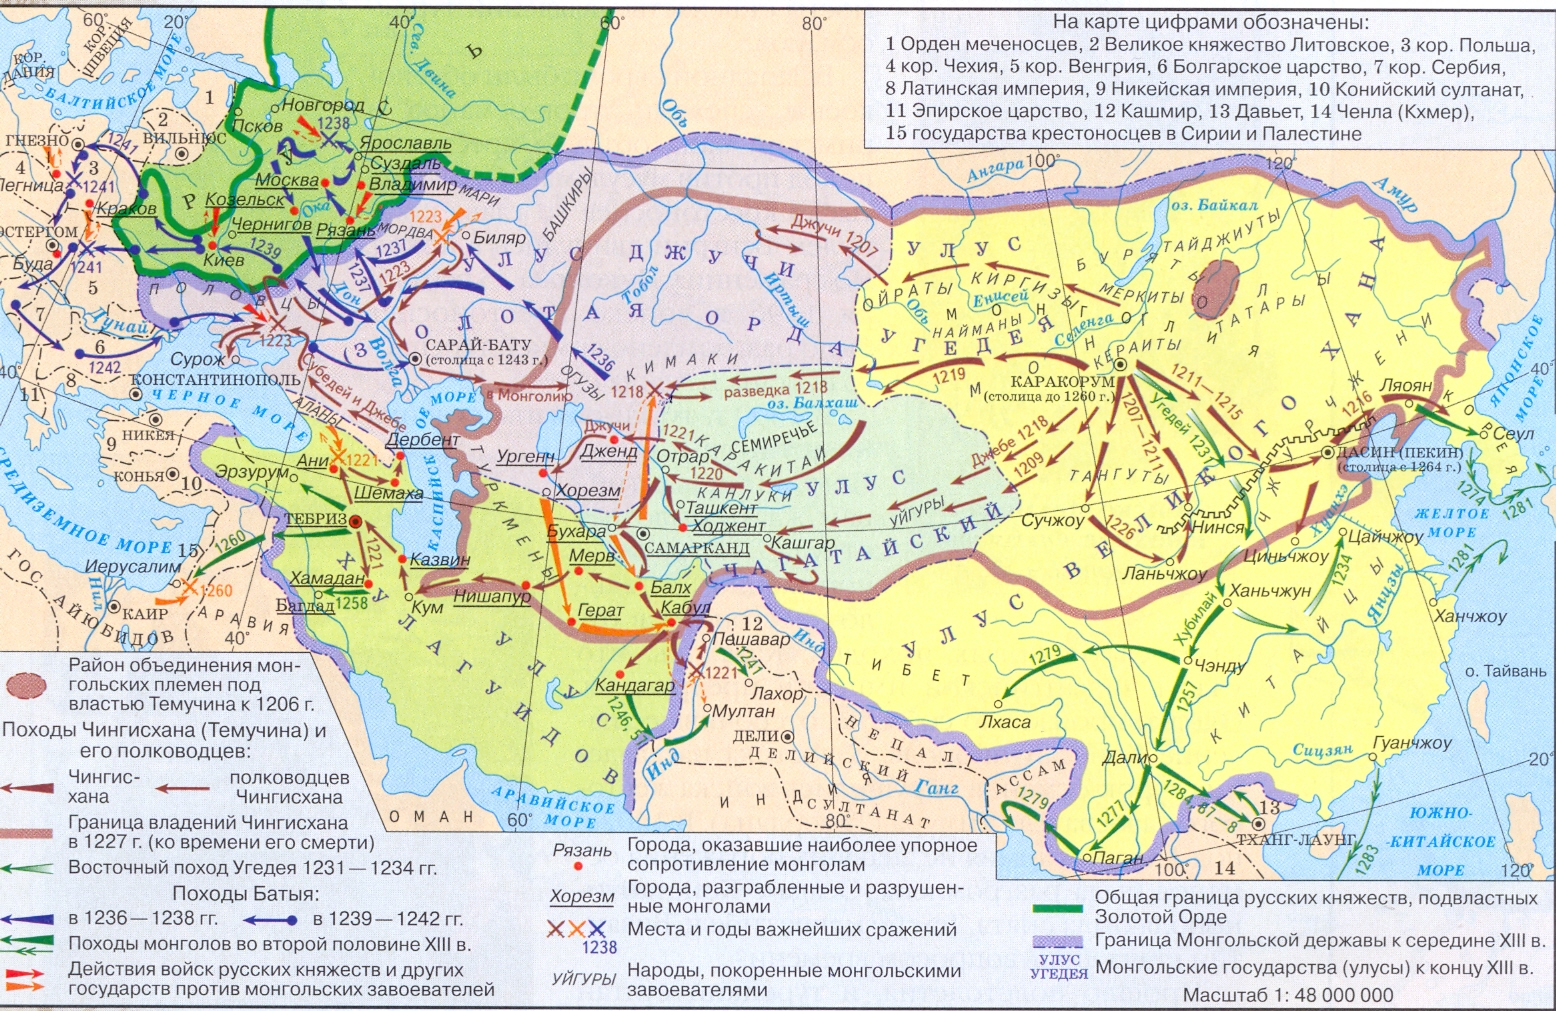 Где жили ханы. Карта завоеваний монголов в 13 веке. Монгольские завоевания 13-15 века карта. Завоевания Чингисхана карта. Монгольские завоевания в 13 веке карта.